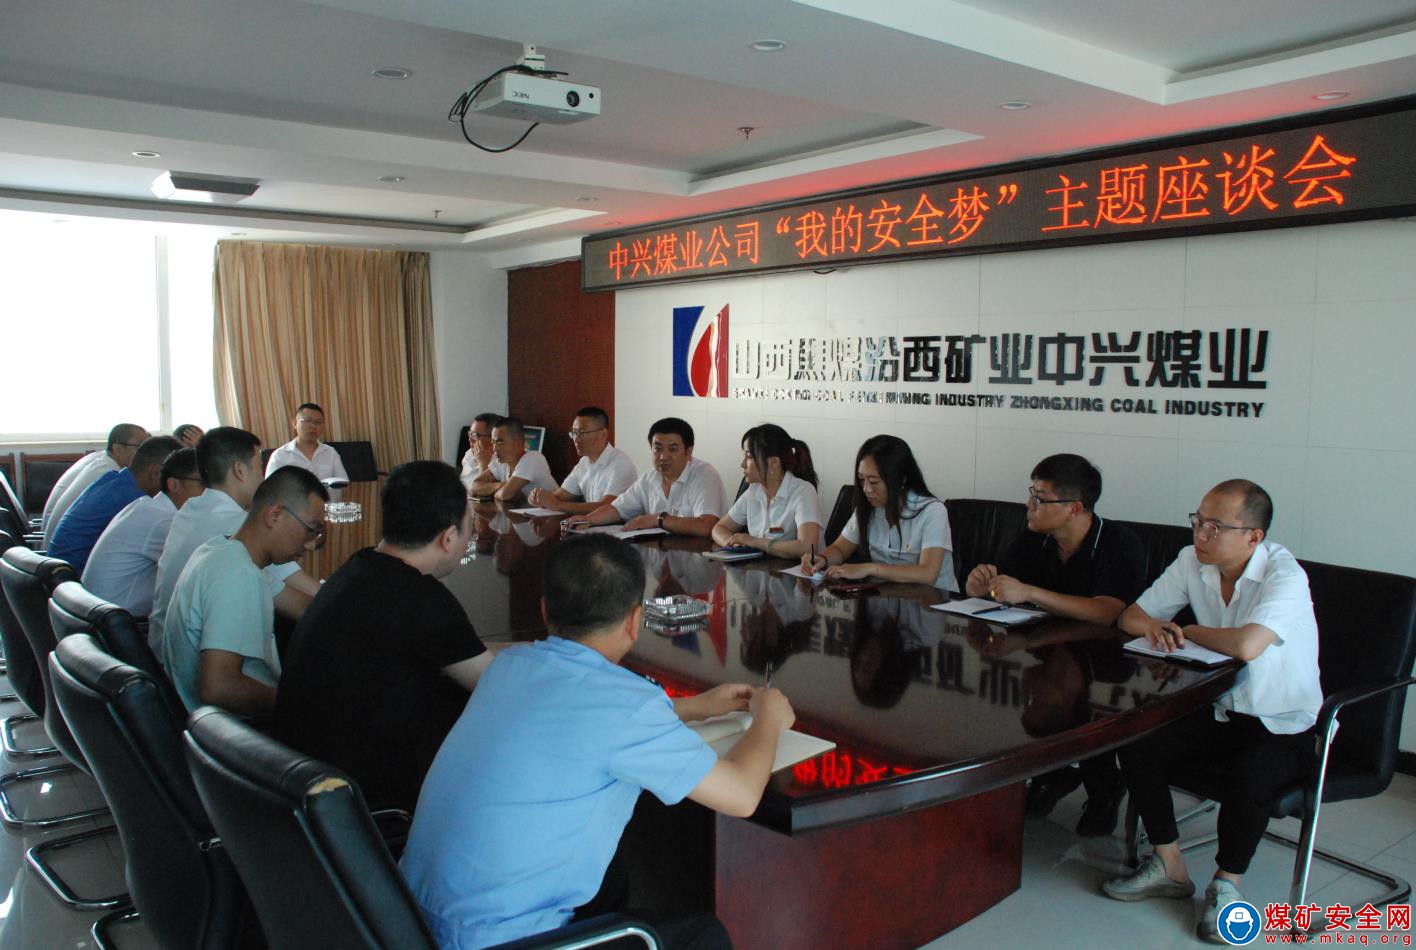 中興煤業團員青年積極參加“我的中國夢”主題座談會